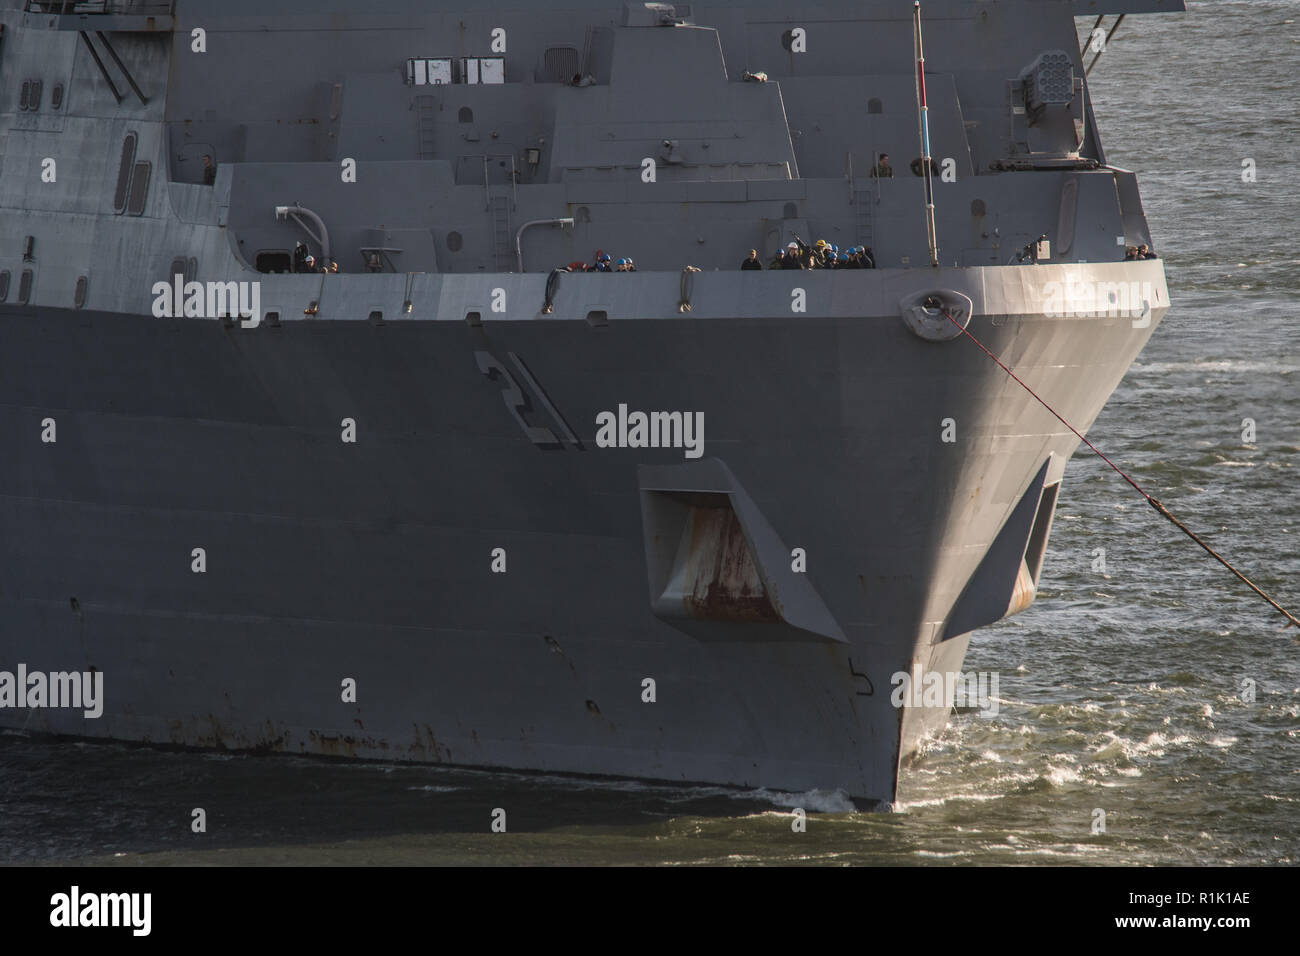 Plymouth, Reino Unido, 13 de noviembre de 2018. Hoy, por primera vez, USS New York empotran en Plymouth después de completar el ejercicio Trident coyuntura a principios de este mes. Crédito: Sam Whitfield - Ultimate Shot/Alamy Live News Foto de stock